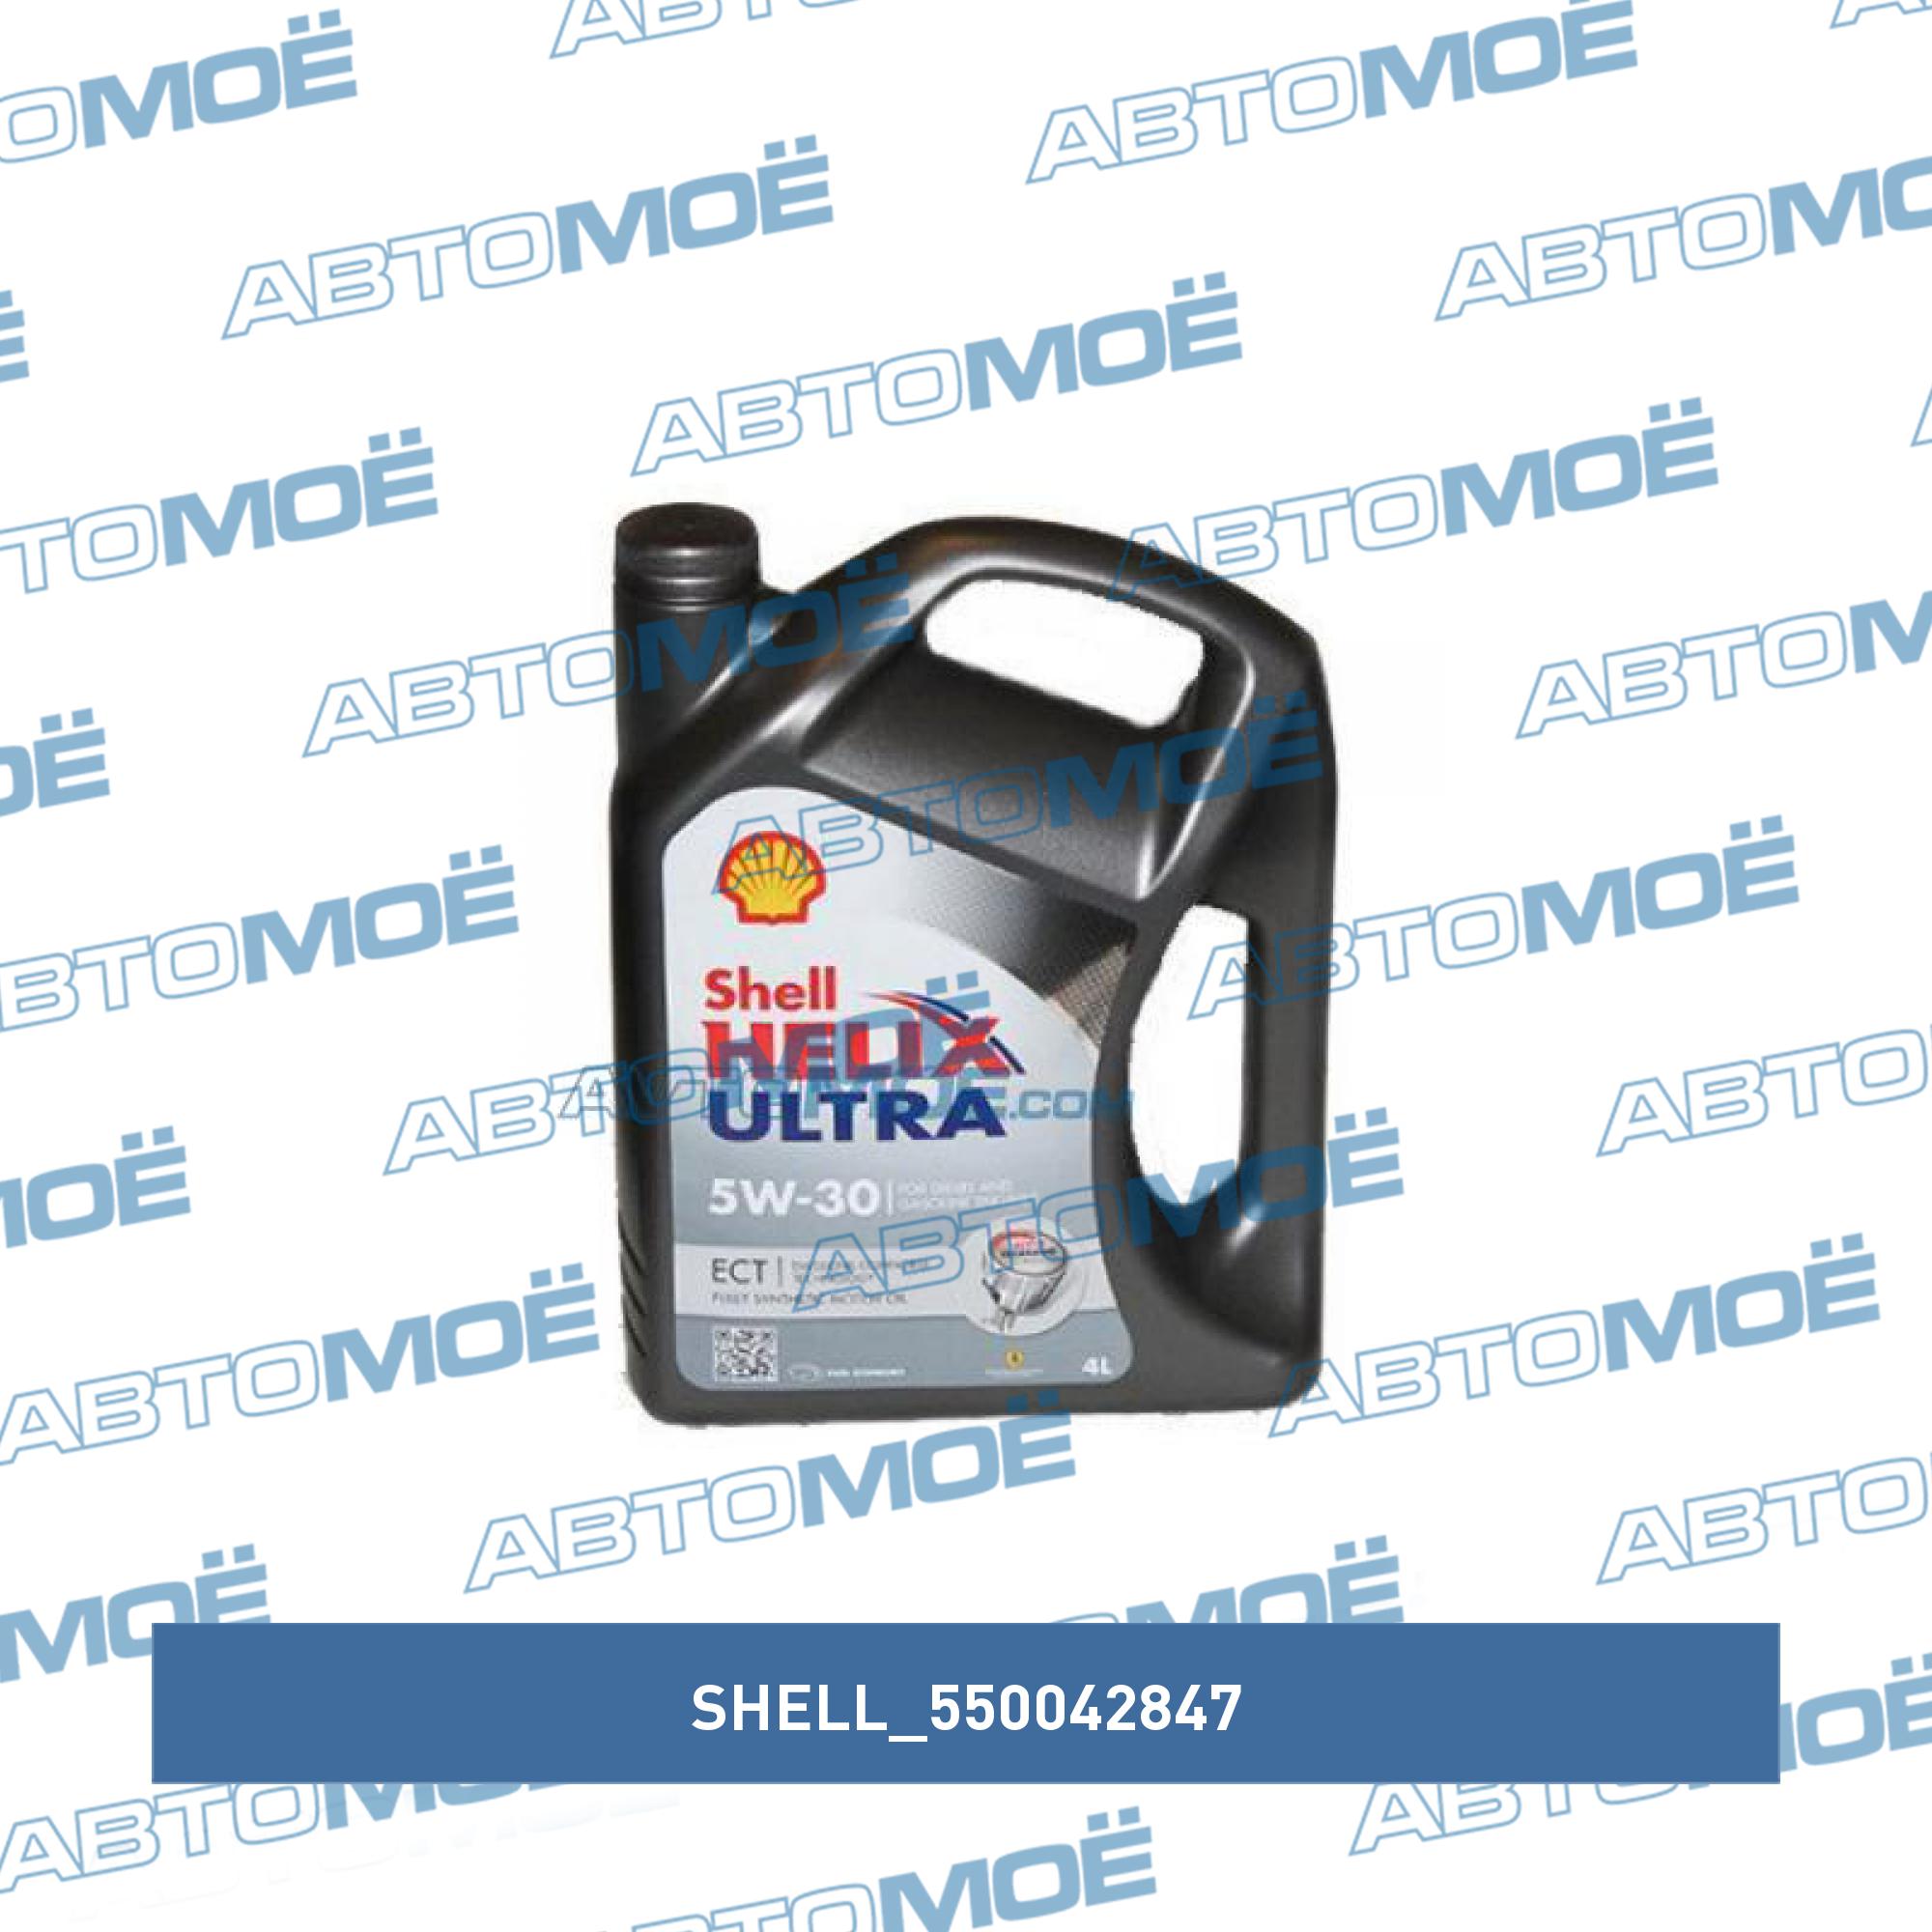  моторное Shell helix ultra ECT 5W-30 4л 550042847 Shell  в .